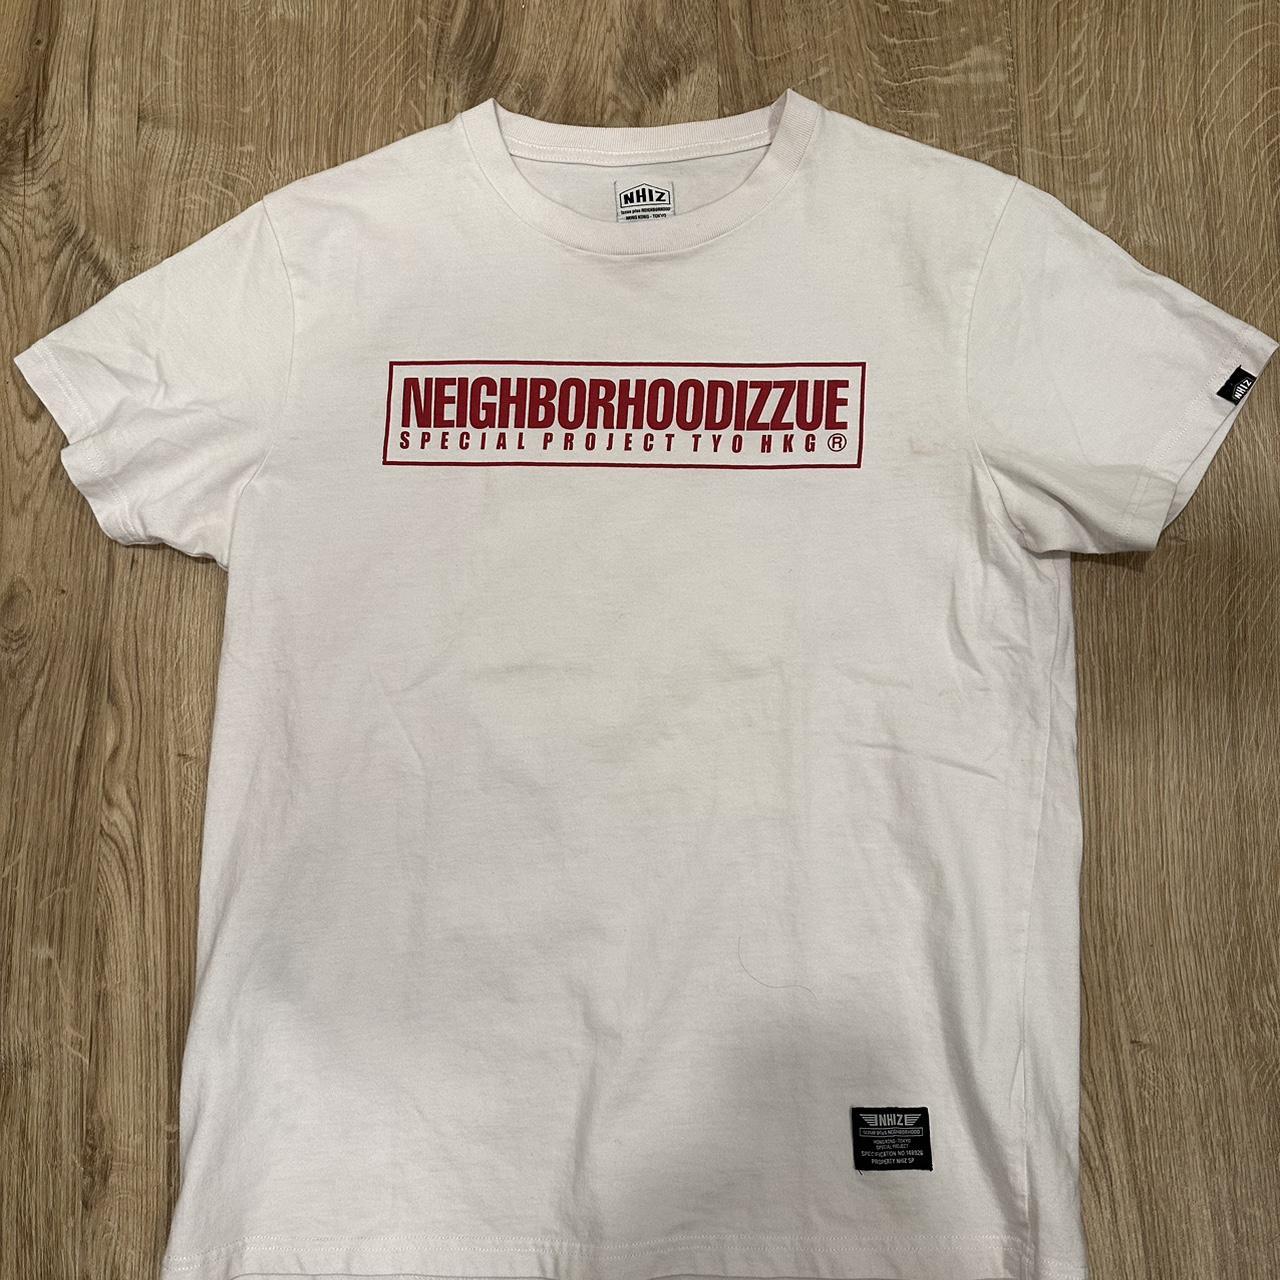 Neighborhood Men's White and Red T-shirt